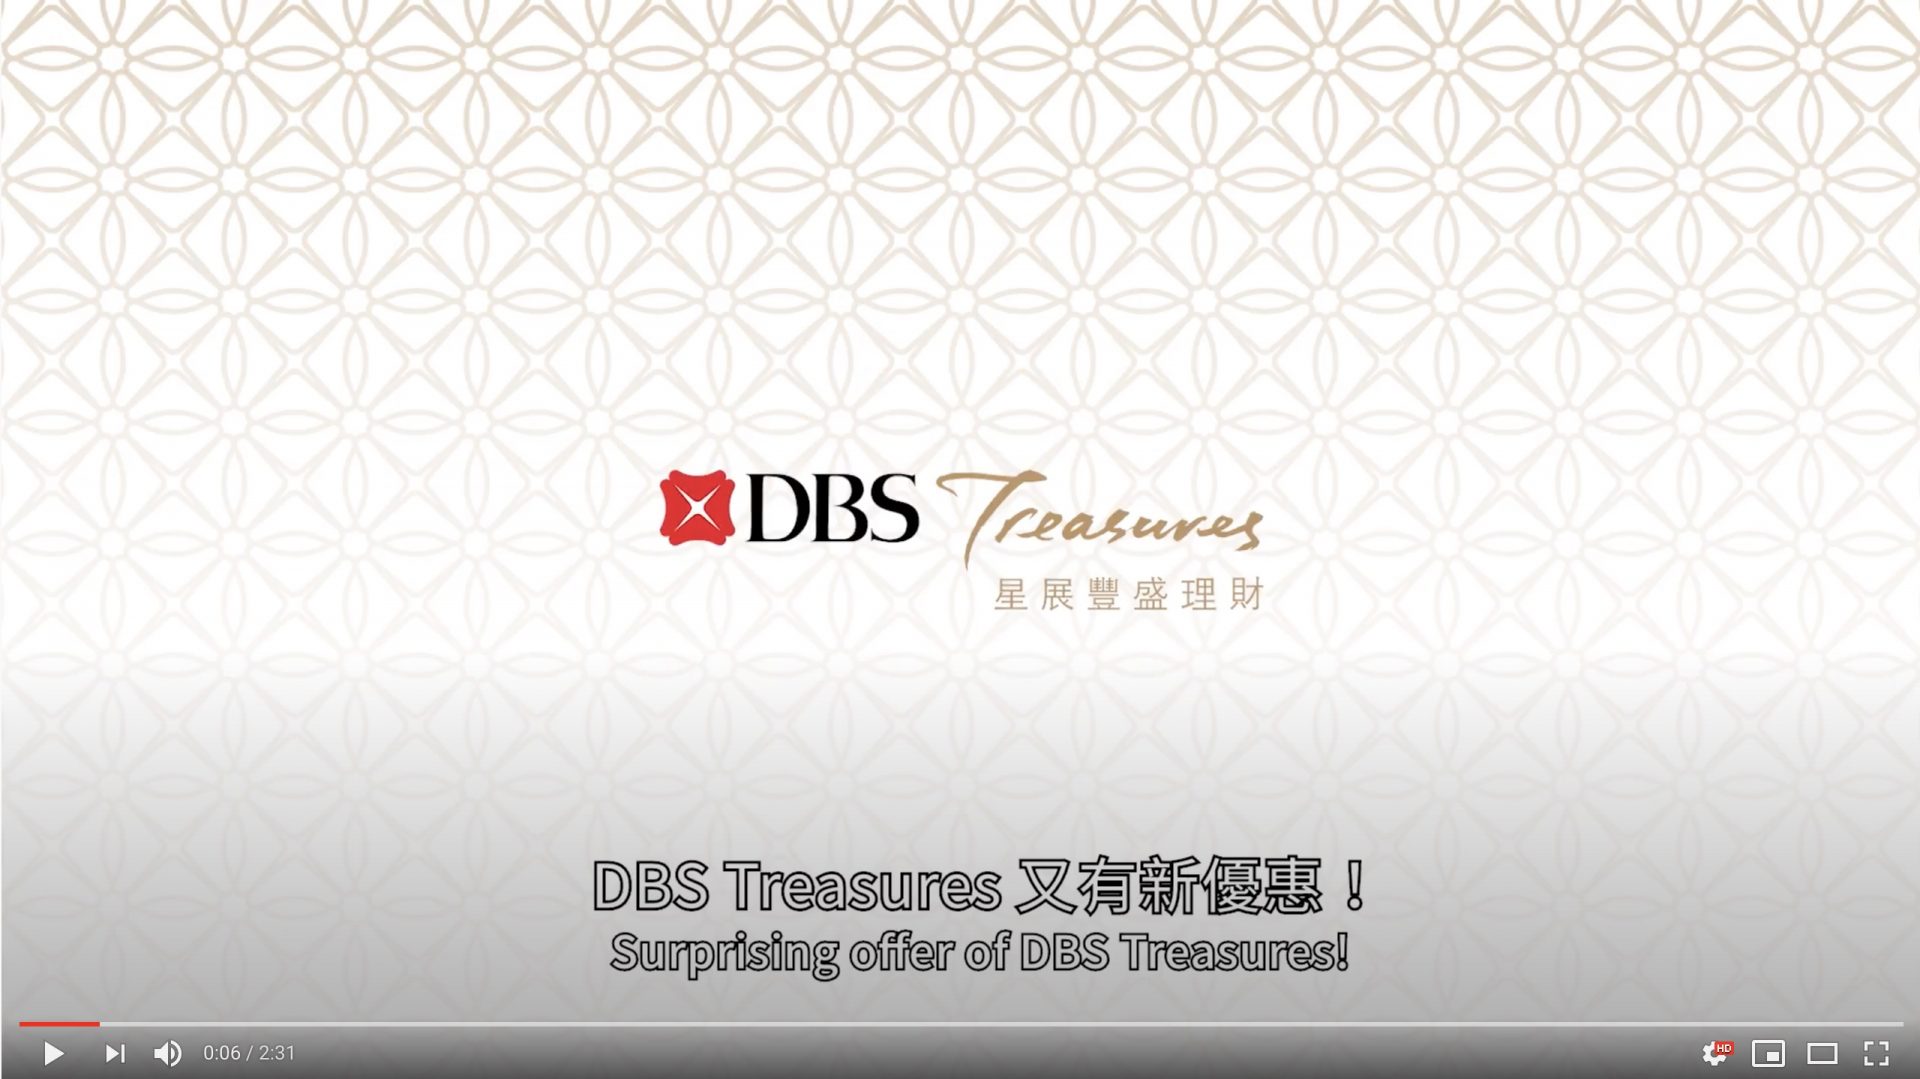 DBS Treasures Internal Video 2018